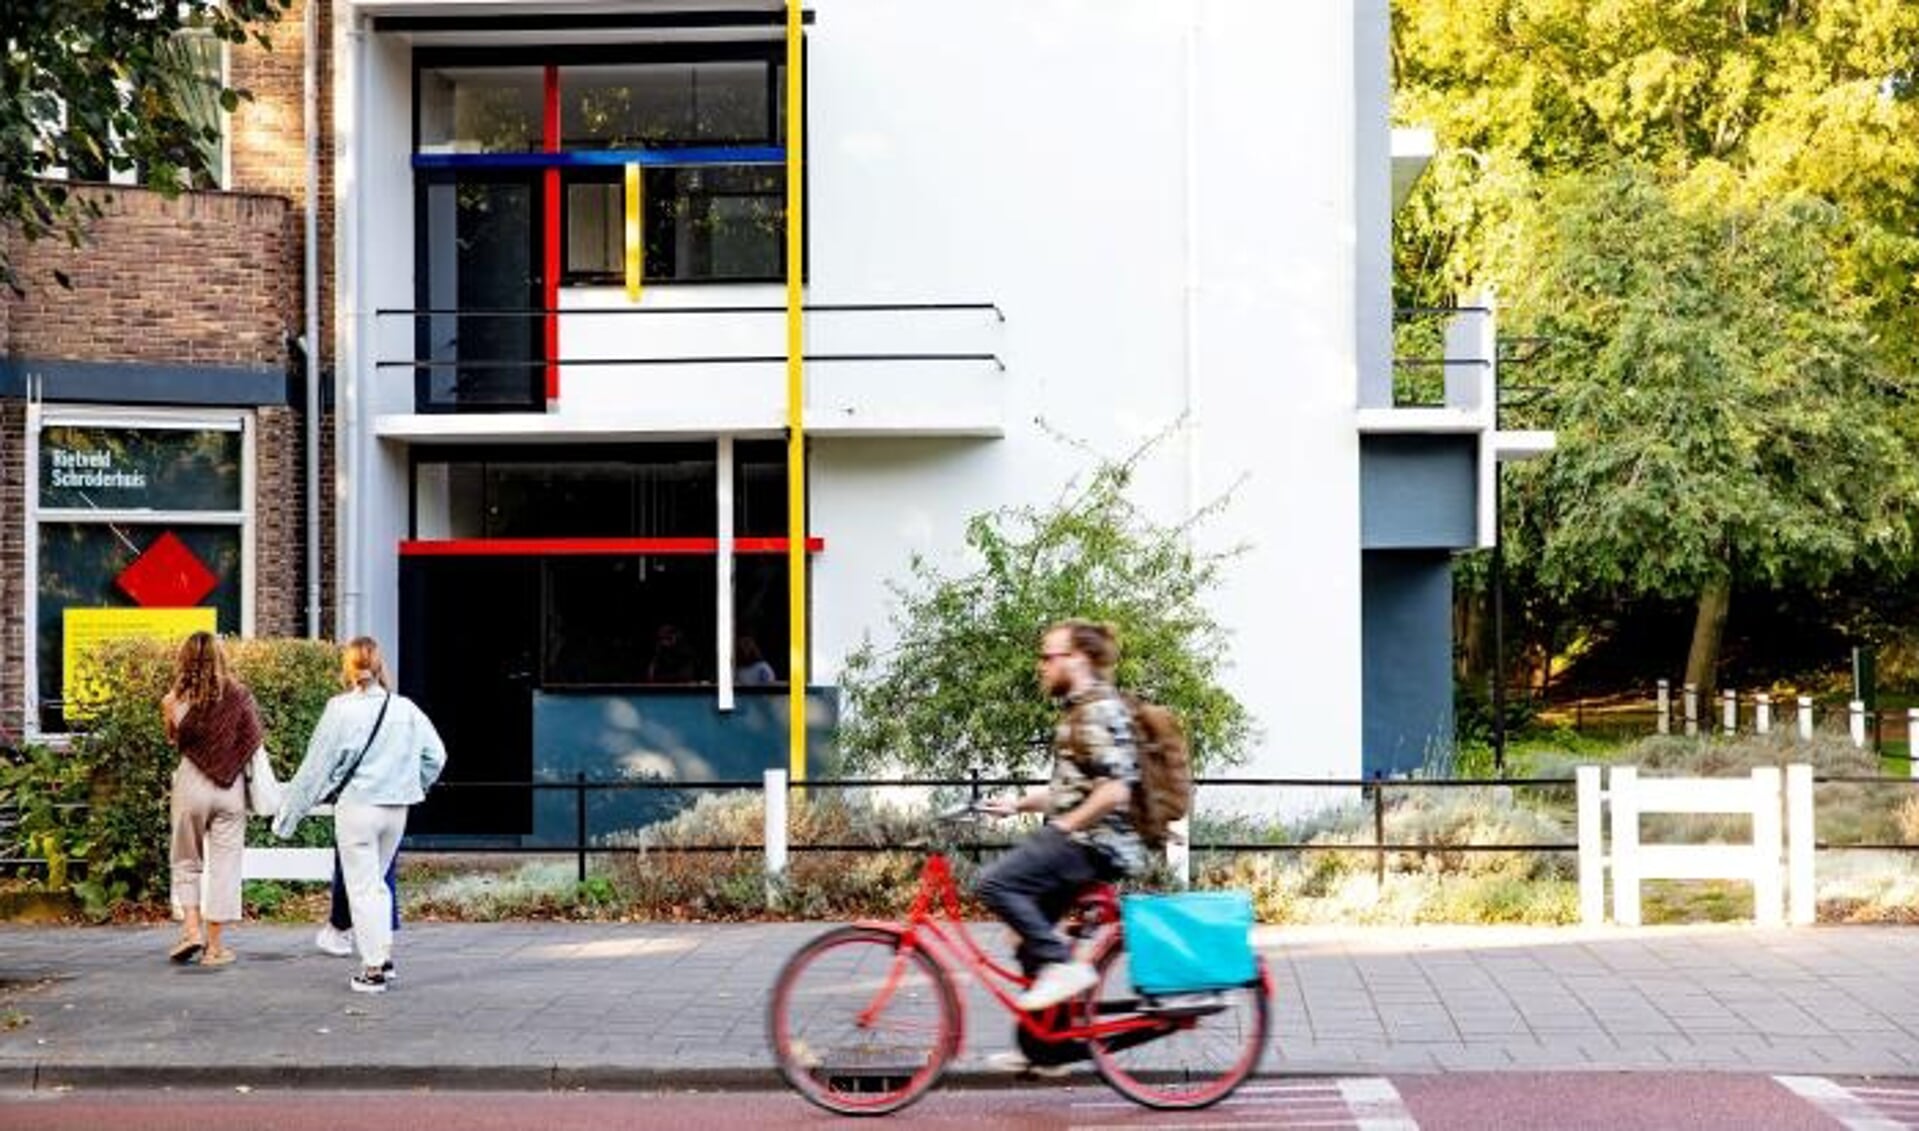 Retveld Schröderhuis met fietser, foto: Iris van den Broek 